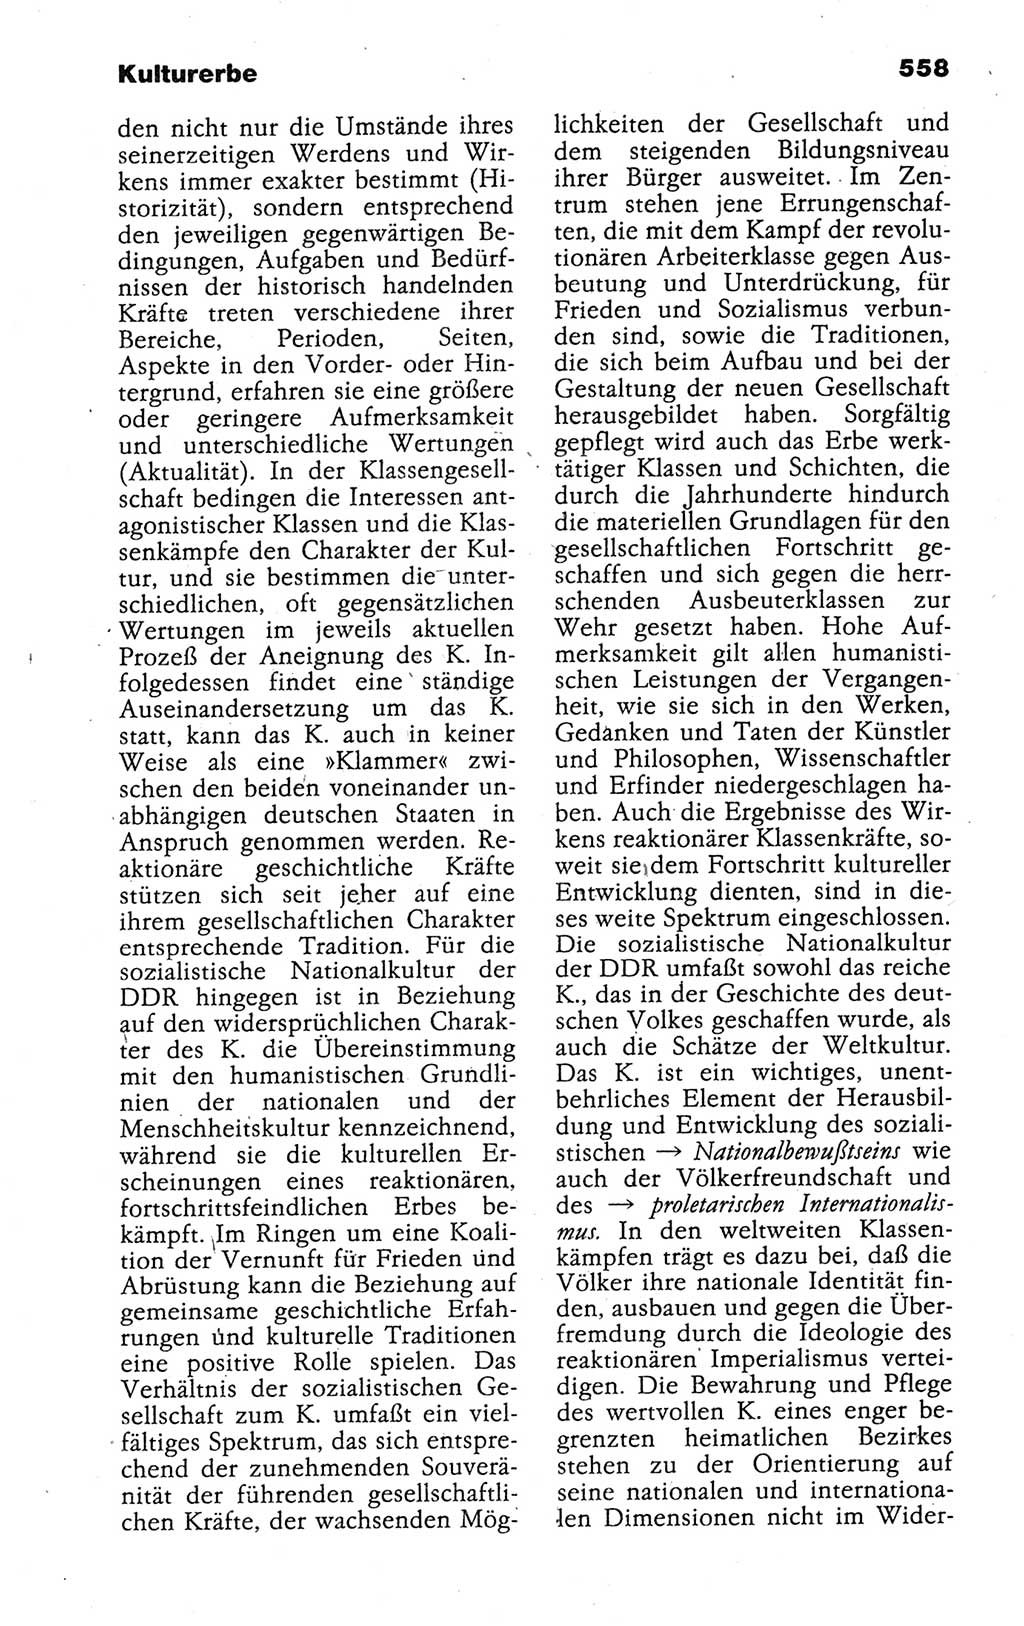 Kleines politisches Wörterbuch [Deutsche Demokratische Republik (DDR)] 1988, Seite 558 (Kl. pol. Wb. DDR 1988, S. 558)